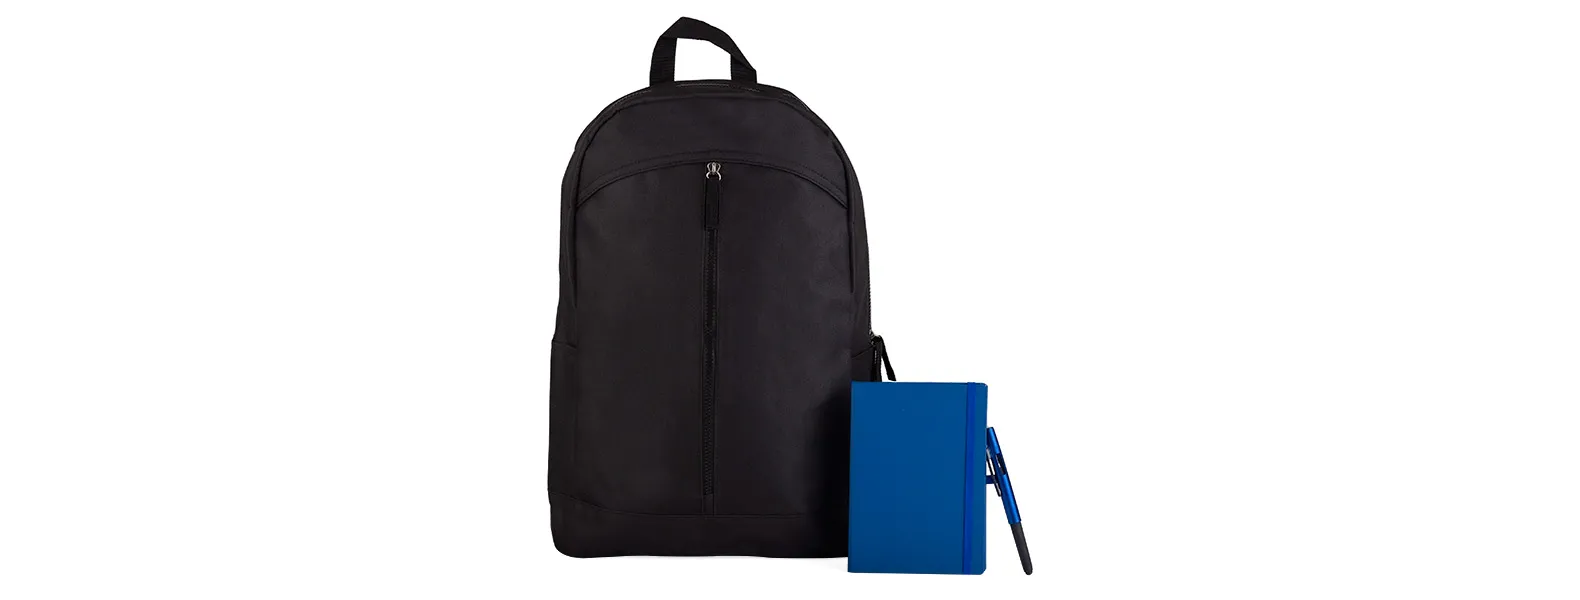 Mochila preta confeccionada em Polyester 600D; caderno para anotações azul com capa dura com pauta e caneta esferográfica em ABS azul